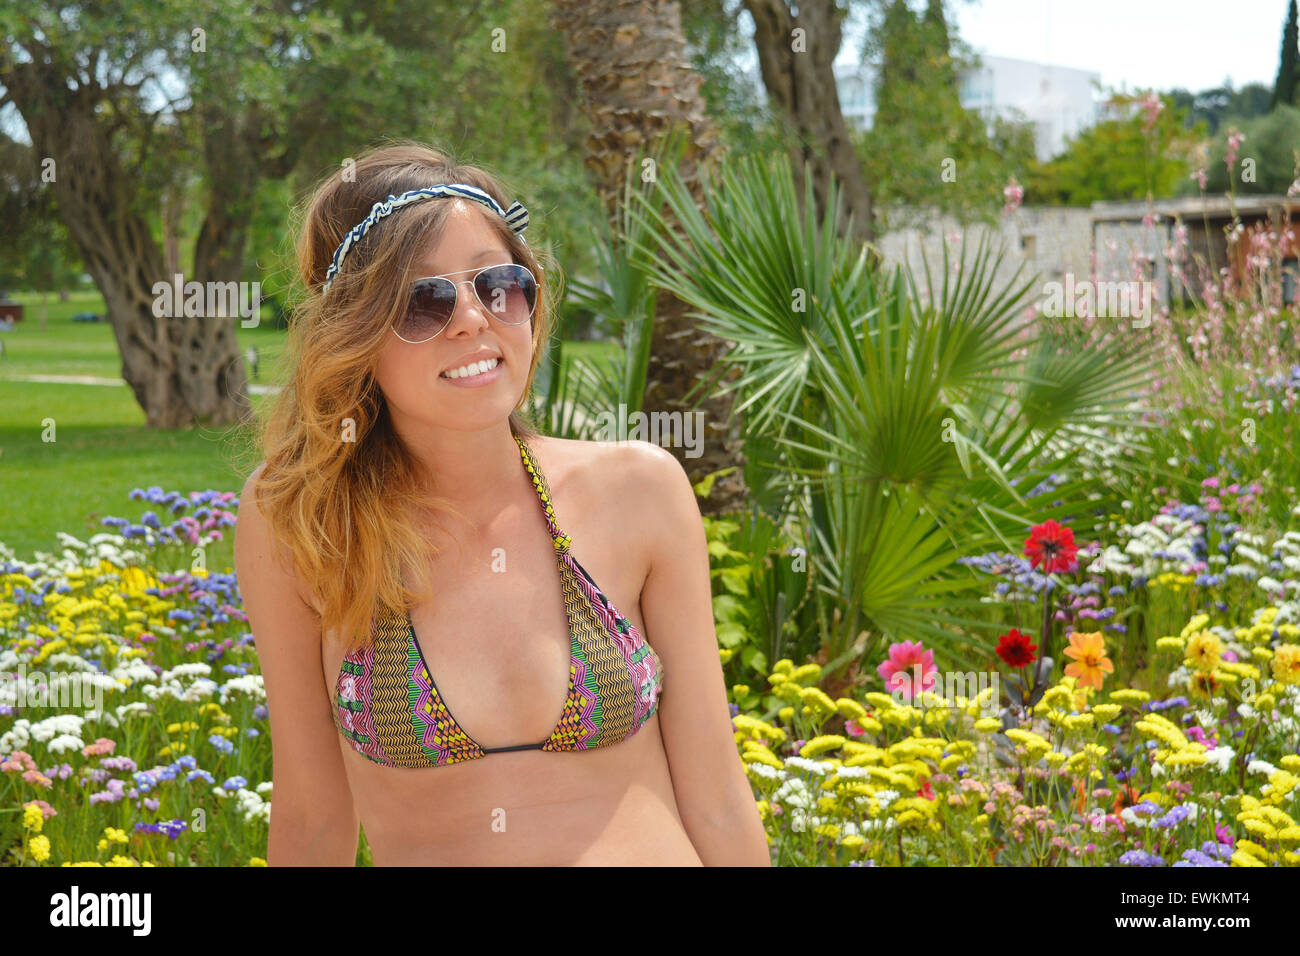 Young girl posing in colorful garden in bikini Stock Photo